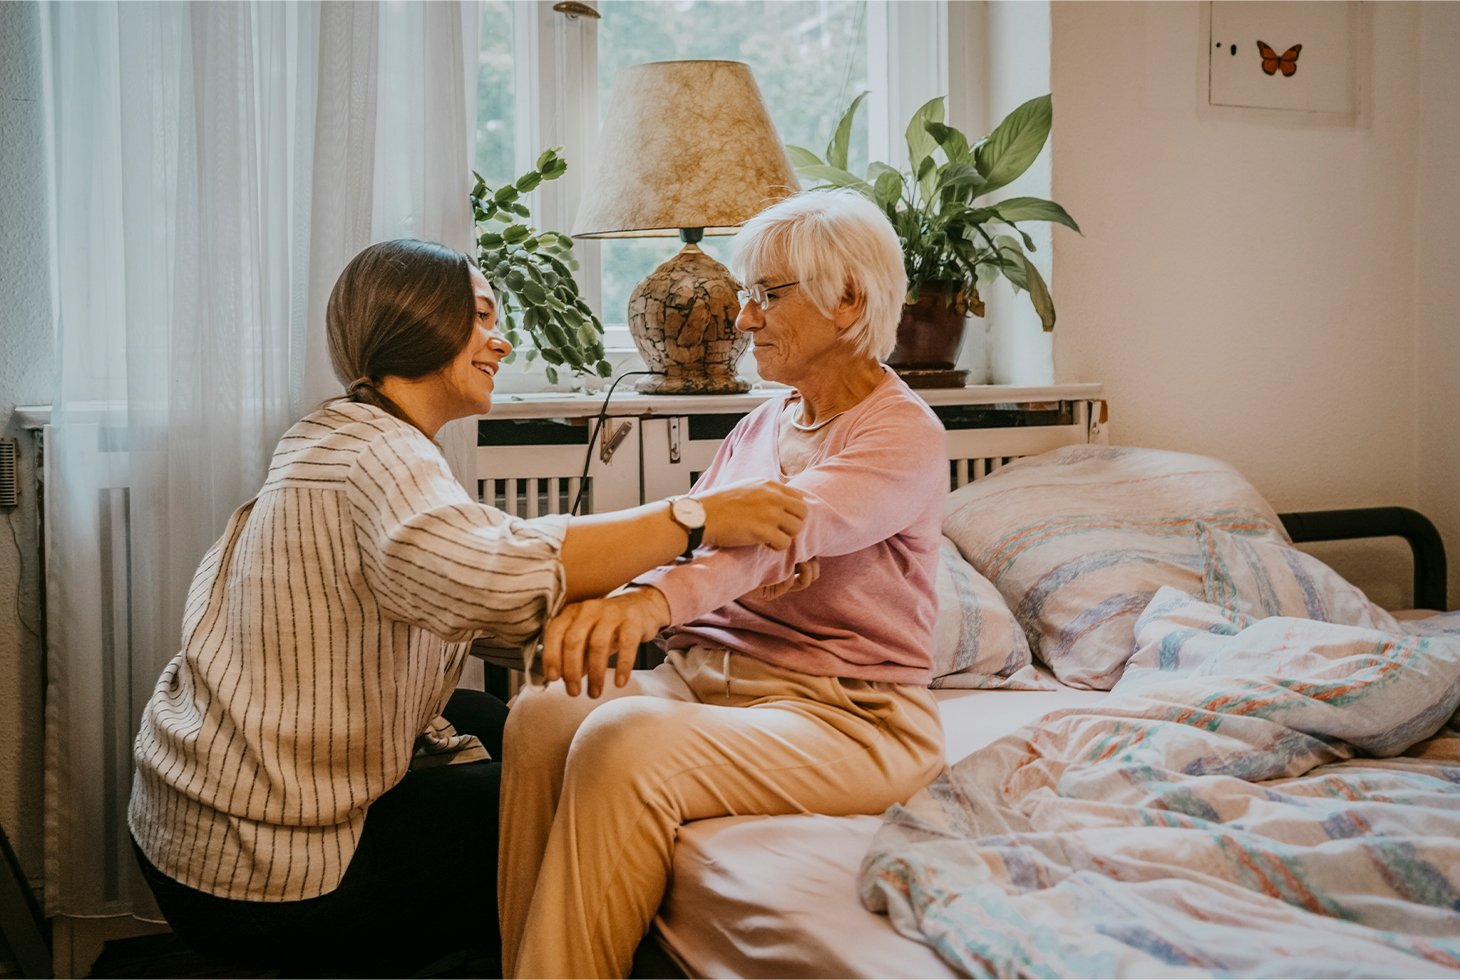 Une personne âgée est assise sur son lit, une aidante l’aide à s’habiller. Visuel pour illustrer l'accompagnement de personnes dépendantes en situation d’incontinence.